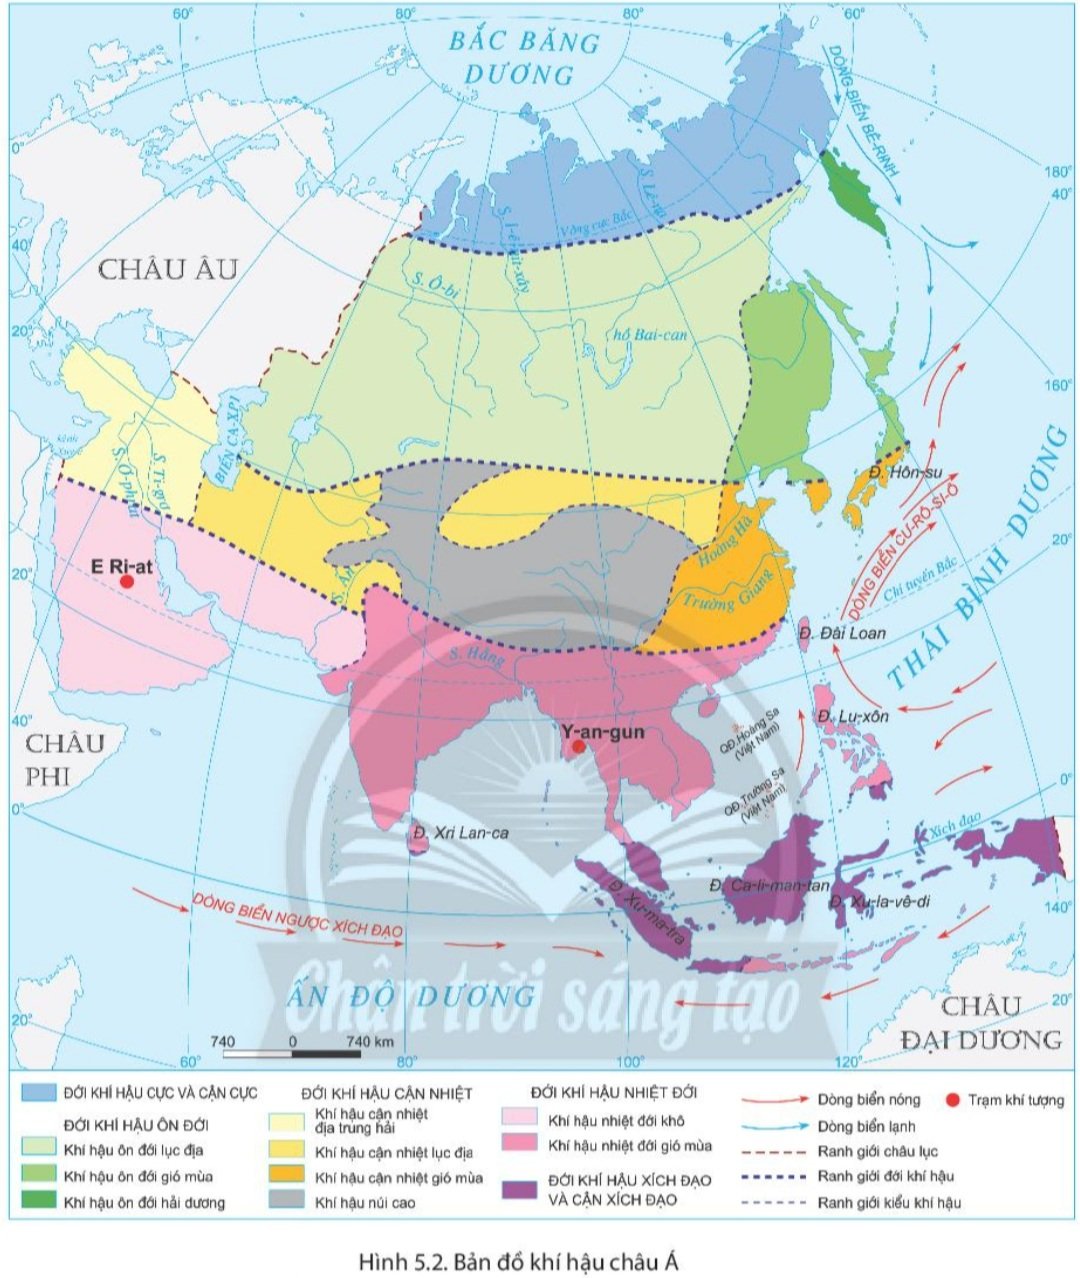 Bài 5. Thiên nhiên châu Á SGK Lịch sử và Địa lí 7 Chân trời sáng tạo>